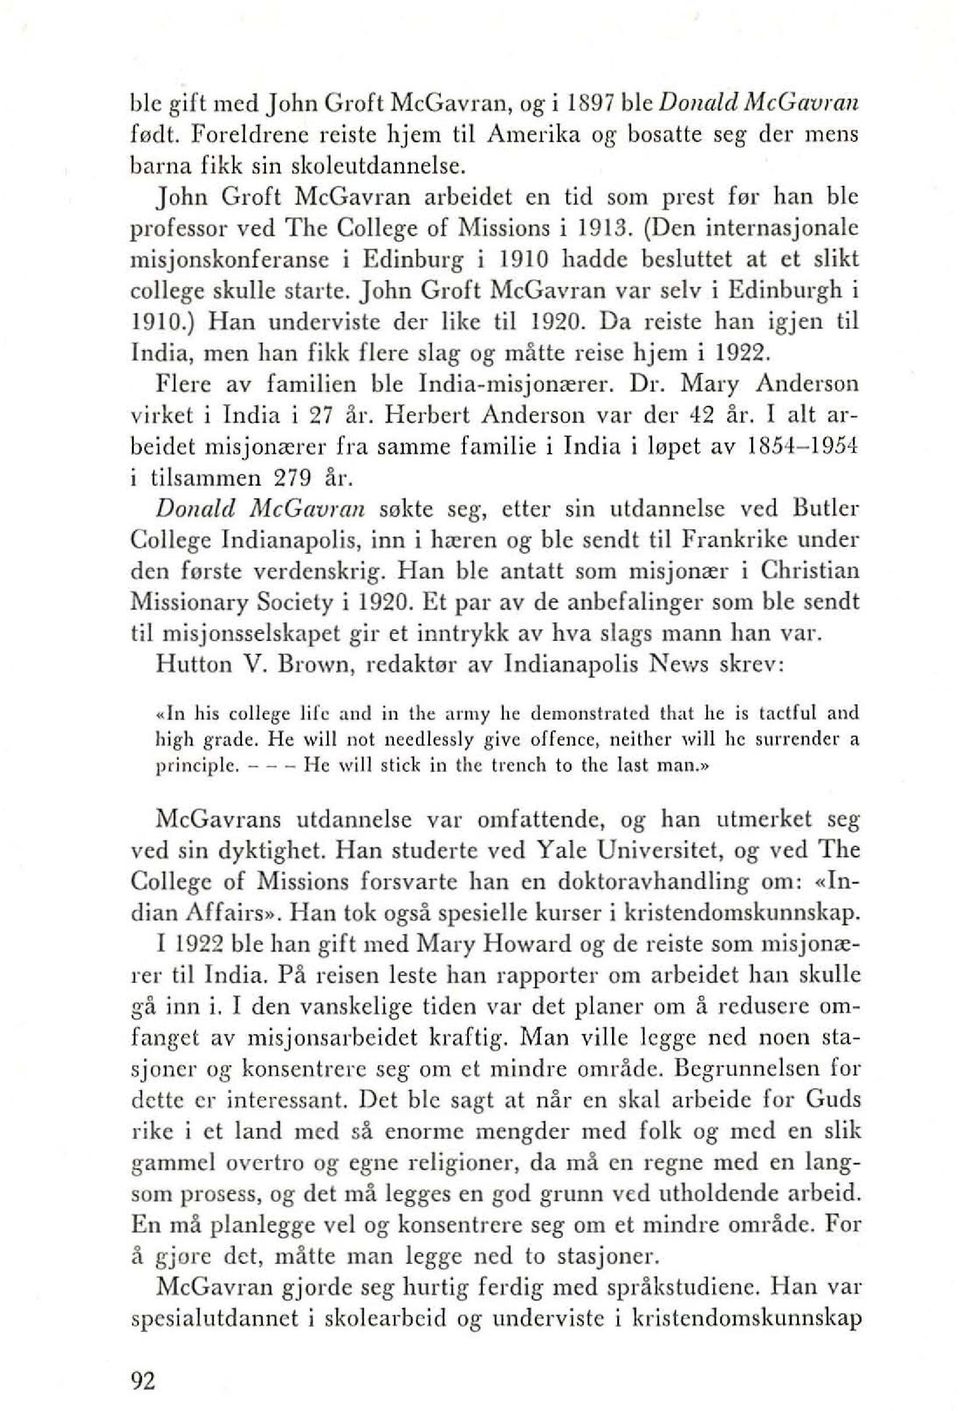 (Den inlernasjonale misjonskonferanse i Edinburg i 1910 hadde beslultet at et slikt college skulle starte. John Groft McGavran var selv i Edinburgh i 1910.) Han underviste der like til 1920.